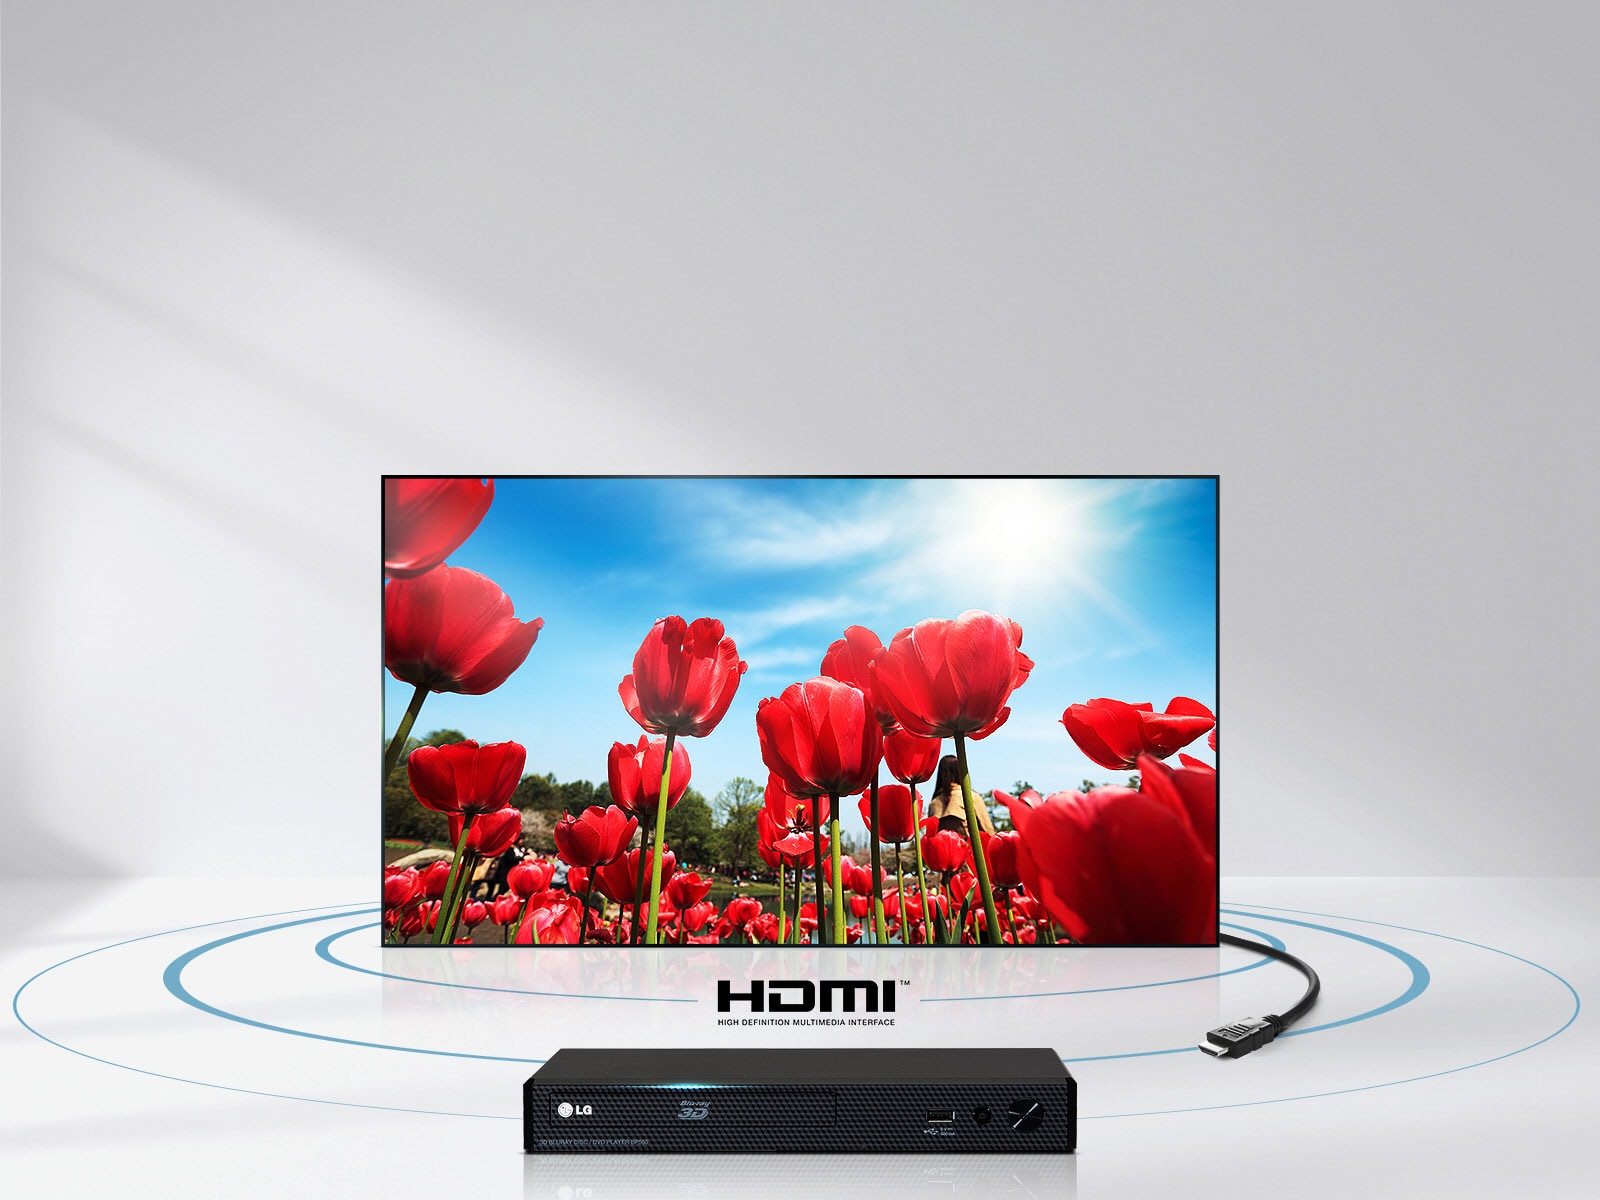 لذت صدا و تصویر باکیفیت، تنها از طریق یک کابل HDMI1